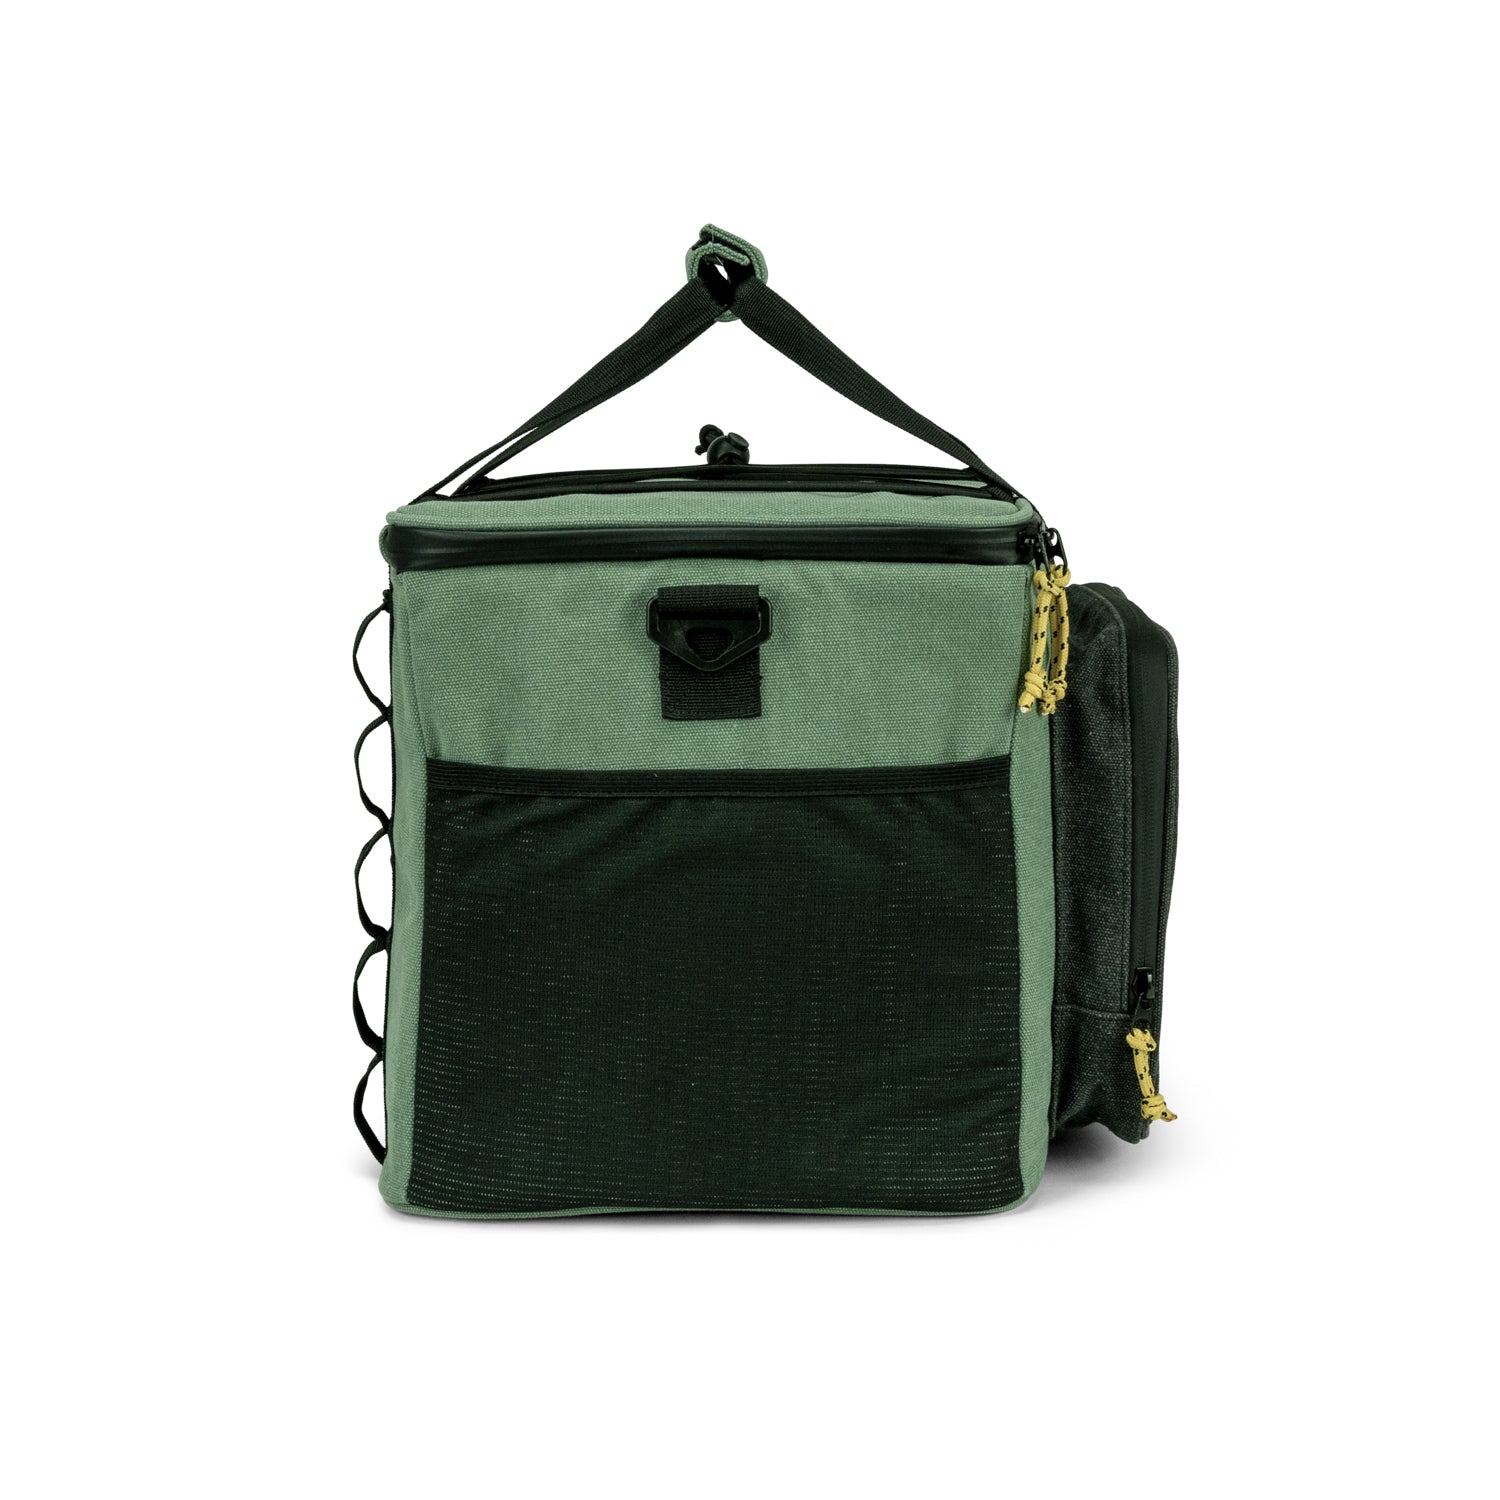 Campo Libre cooler bag HULK (Moss Green, 30l)